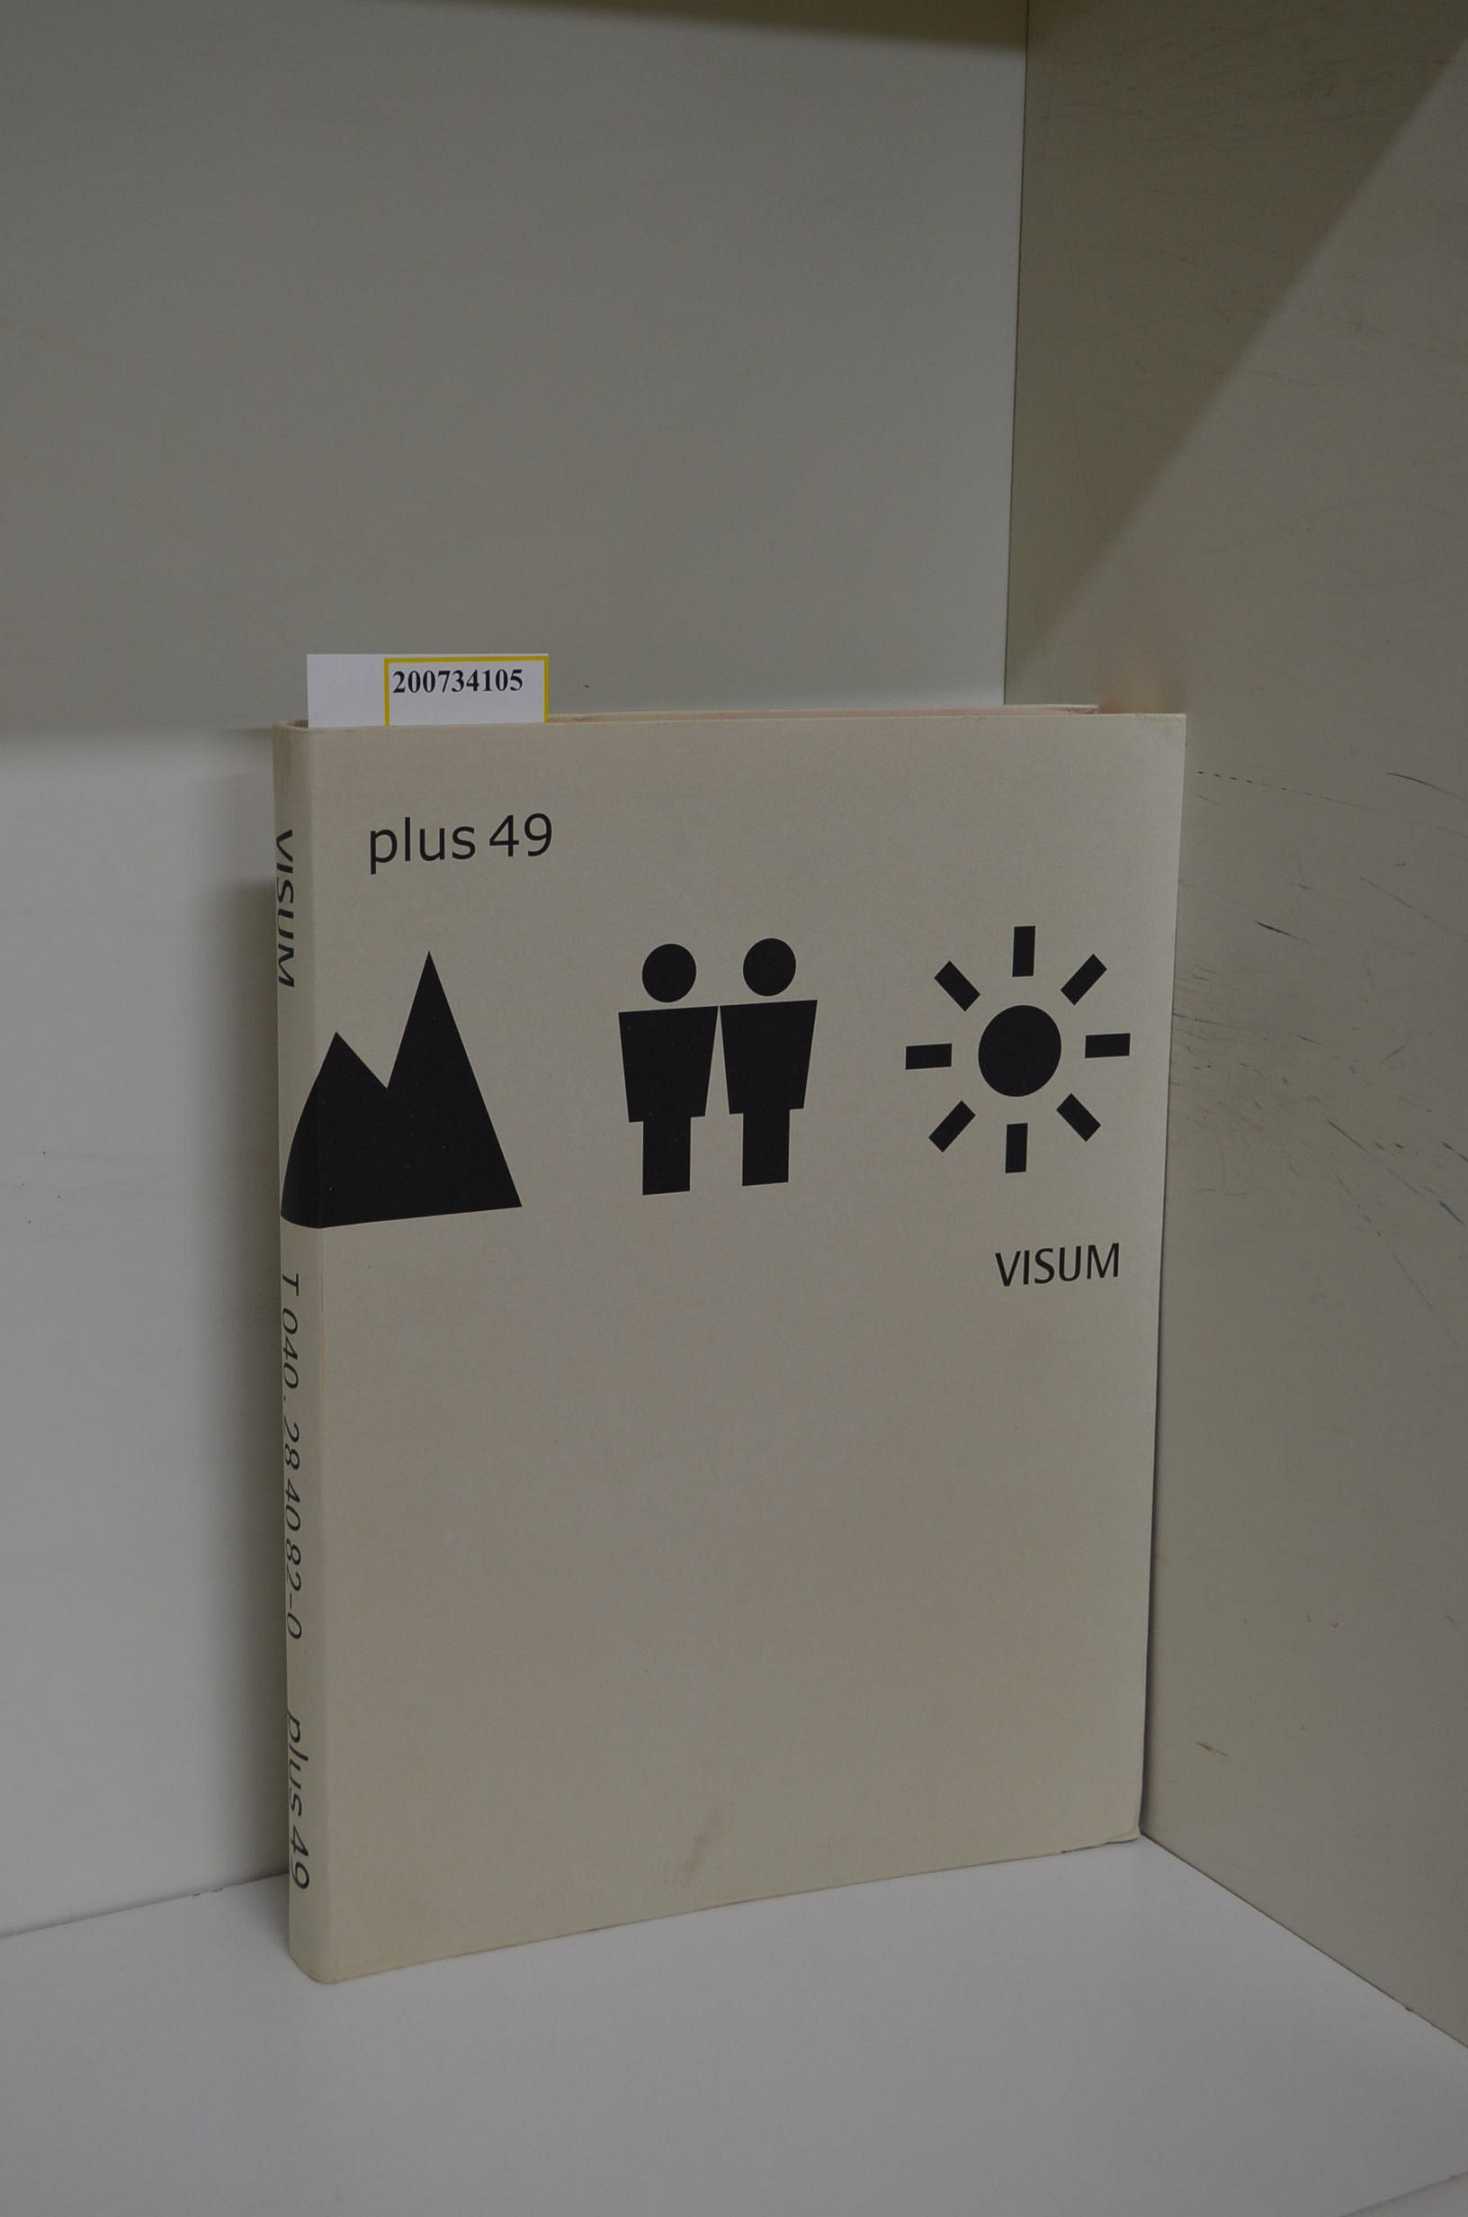 Plus 49 - VISUM / [ed. by Plus 49. Publ.: Lars Bauernschmitt and Alfred Büllesbach] - Bauernschmitt, Lars